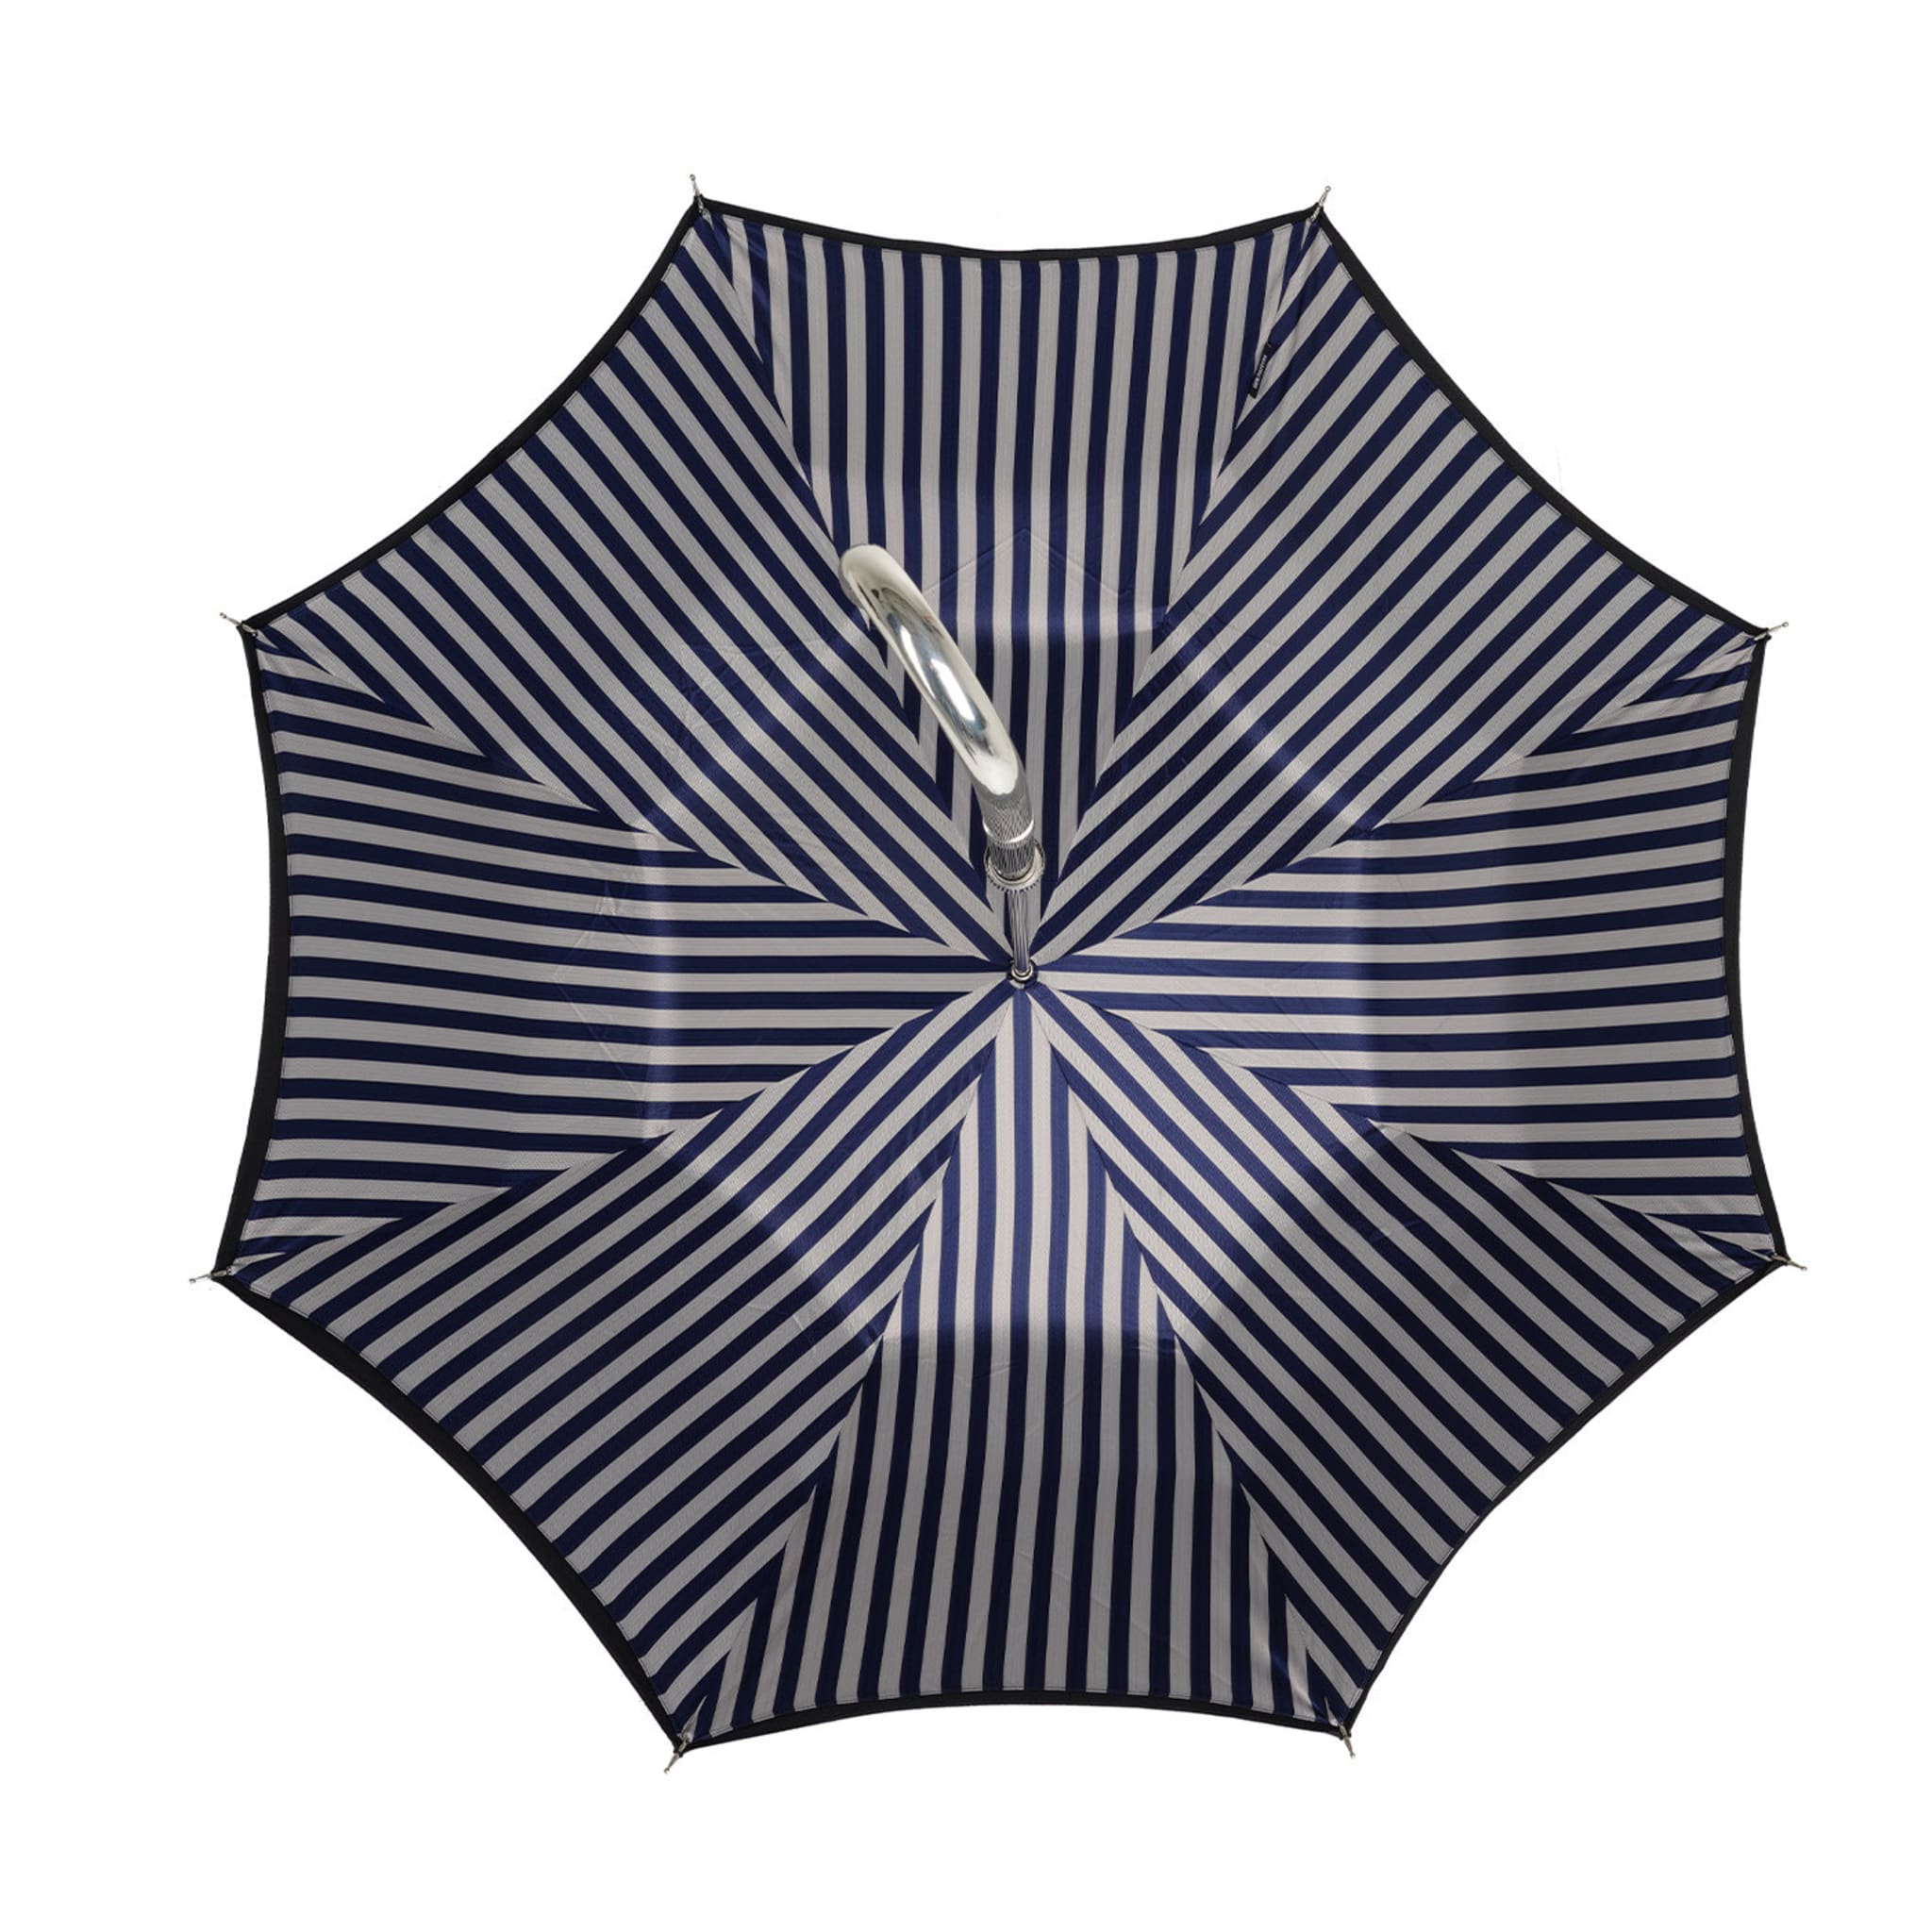 Schwarz/silber und blau gestreifter Regenschirm - Alternative Ansicht 2